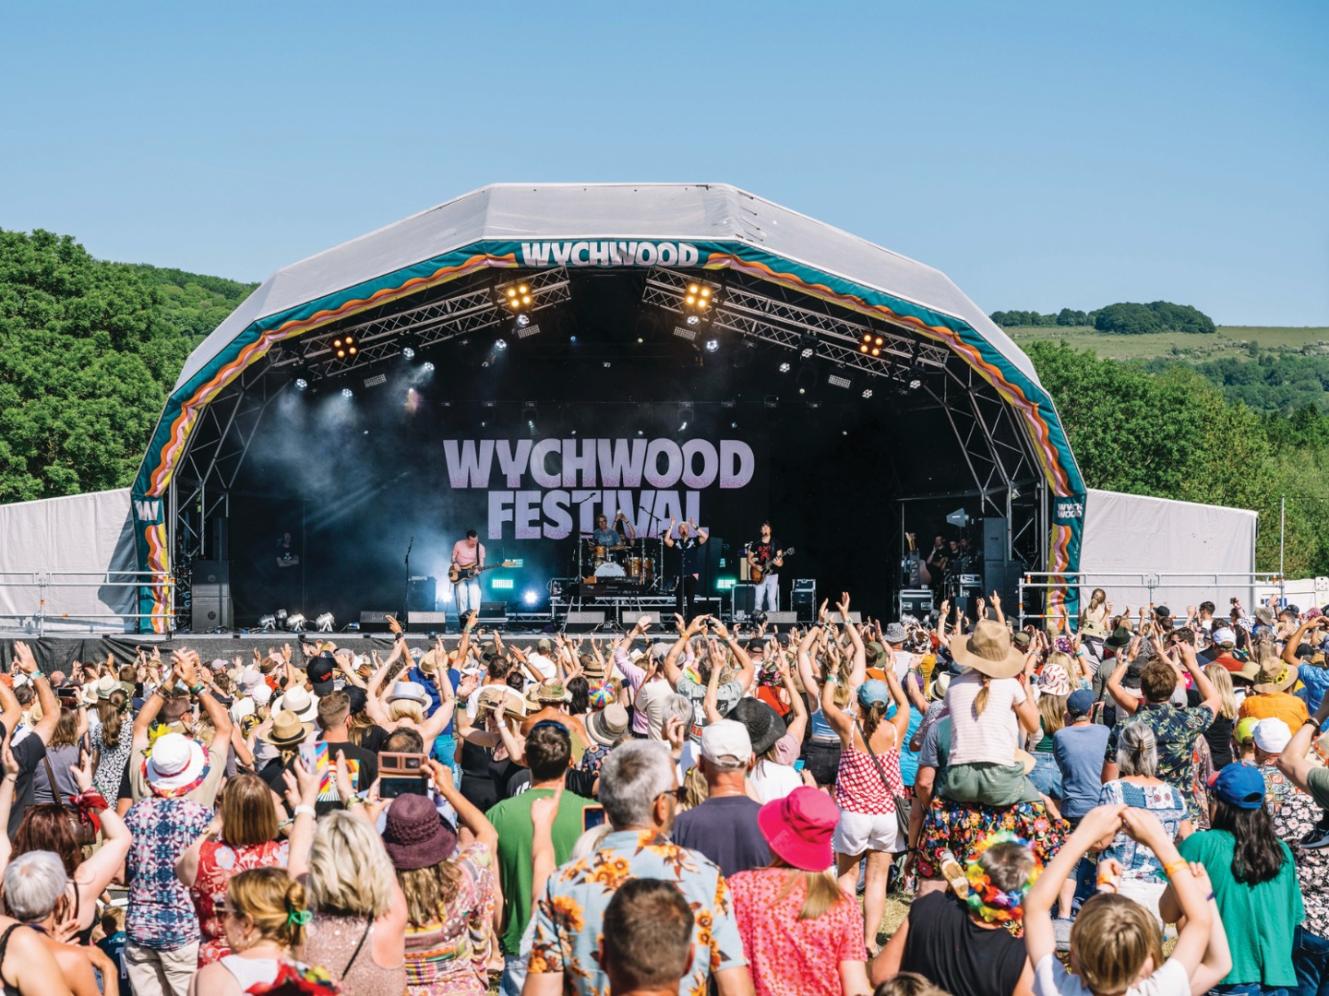 Wychwood festival